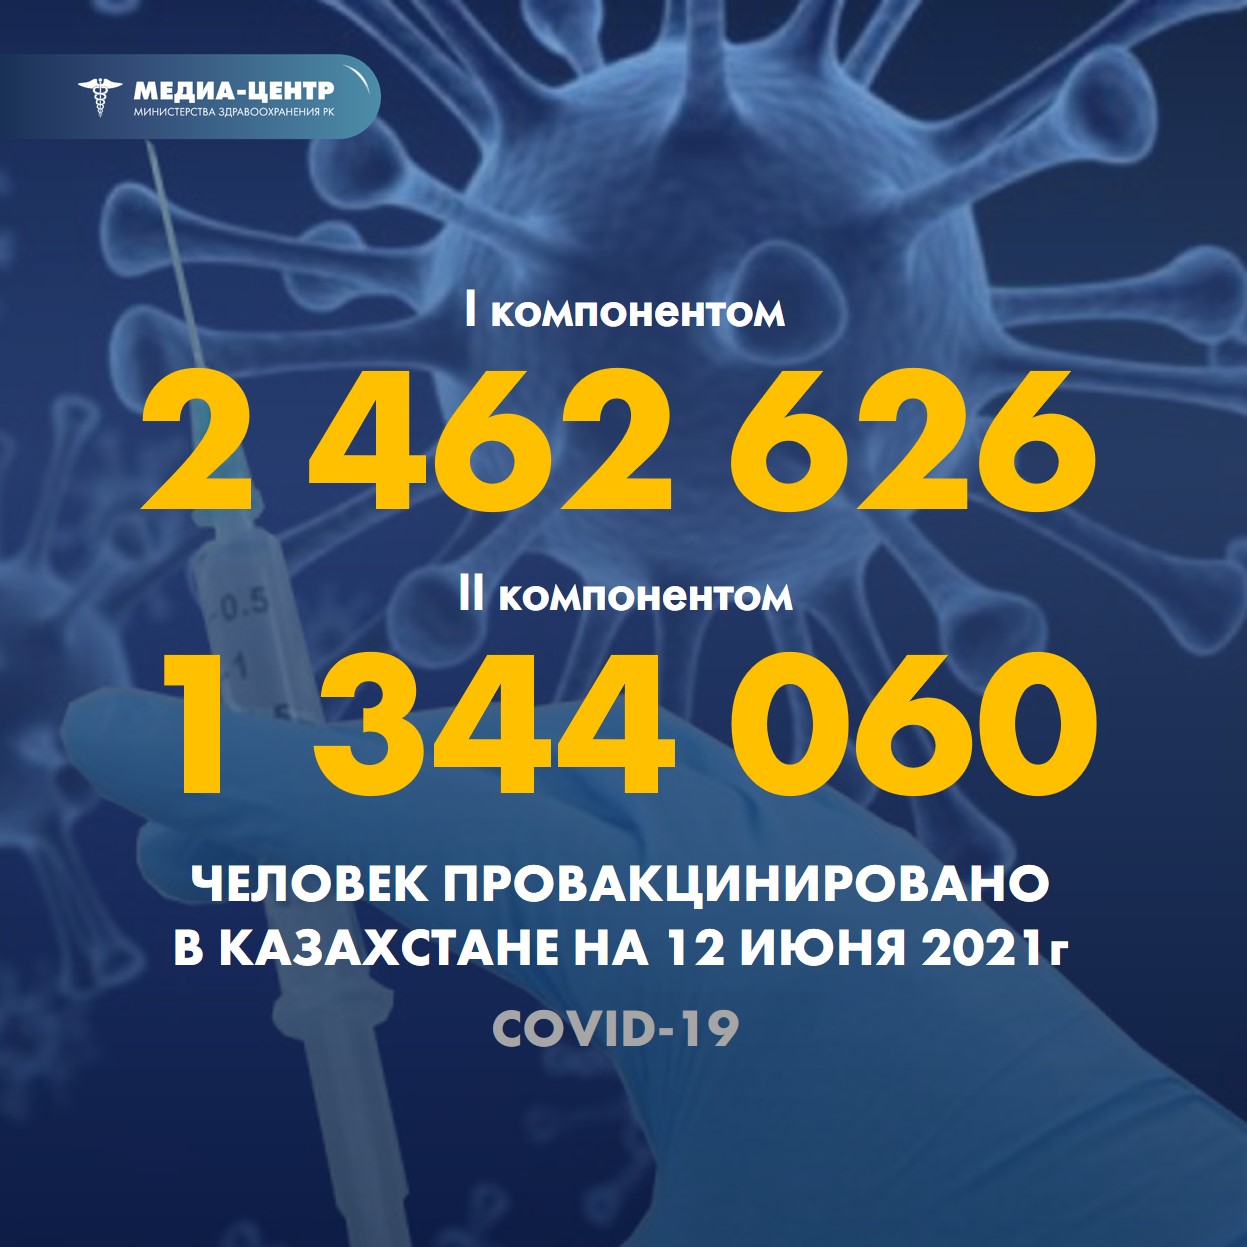 I компонентом 2 462 626 человек провакцинировано в Казахстане на 12 июня 2021 г, II компонентом 1 344 060 человек.